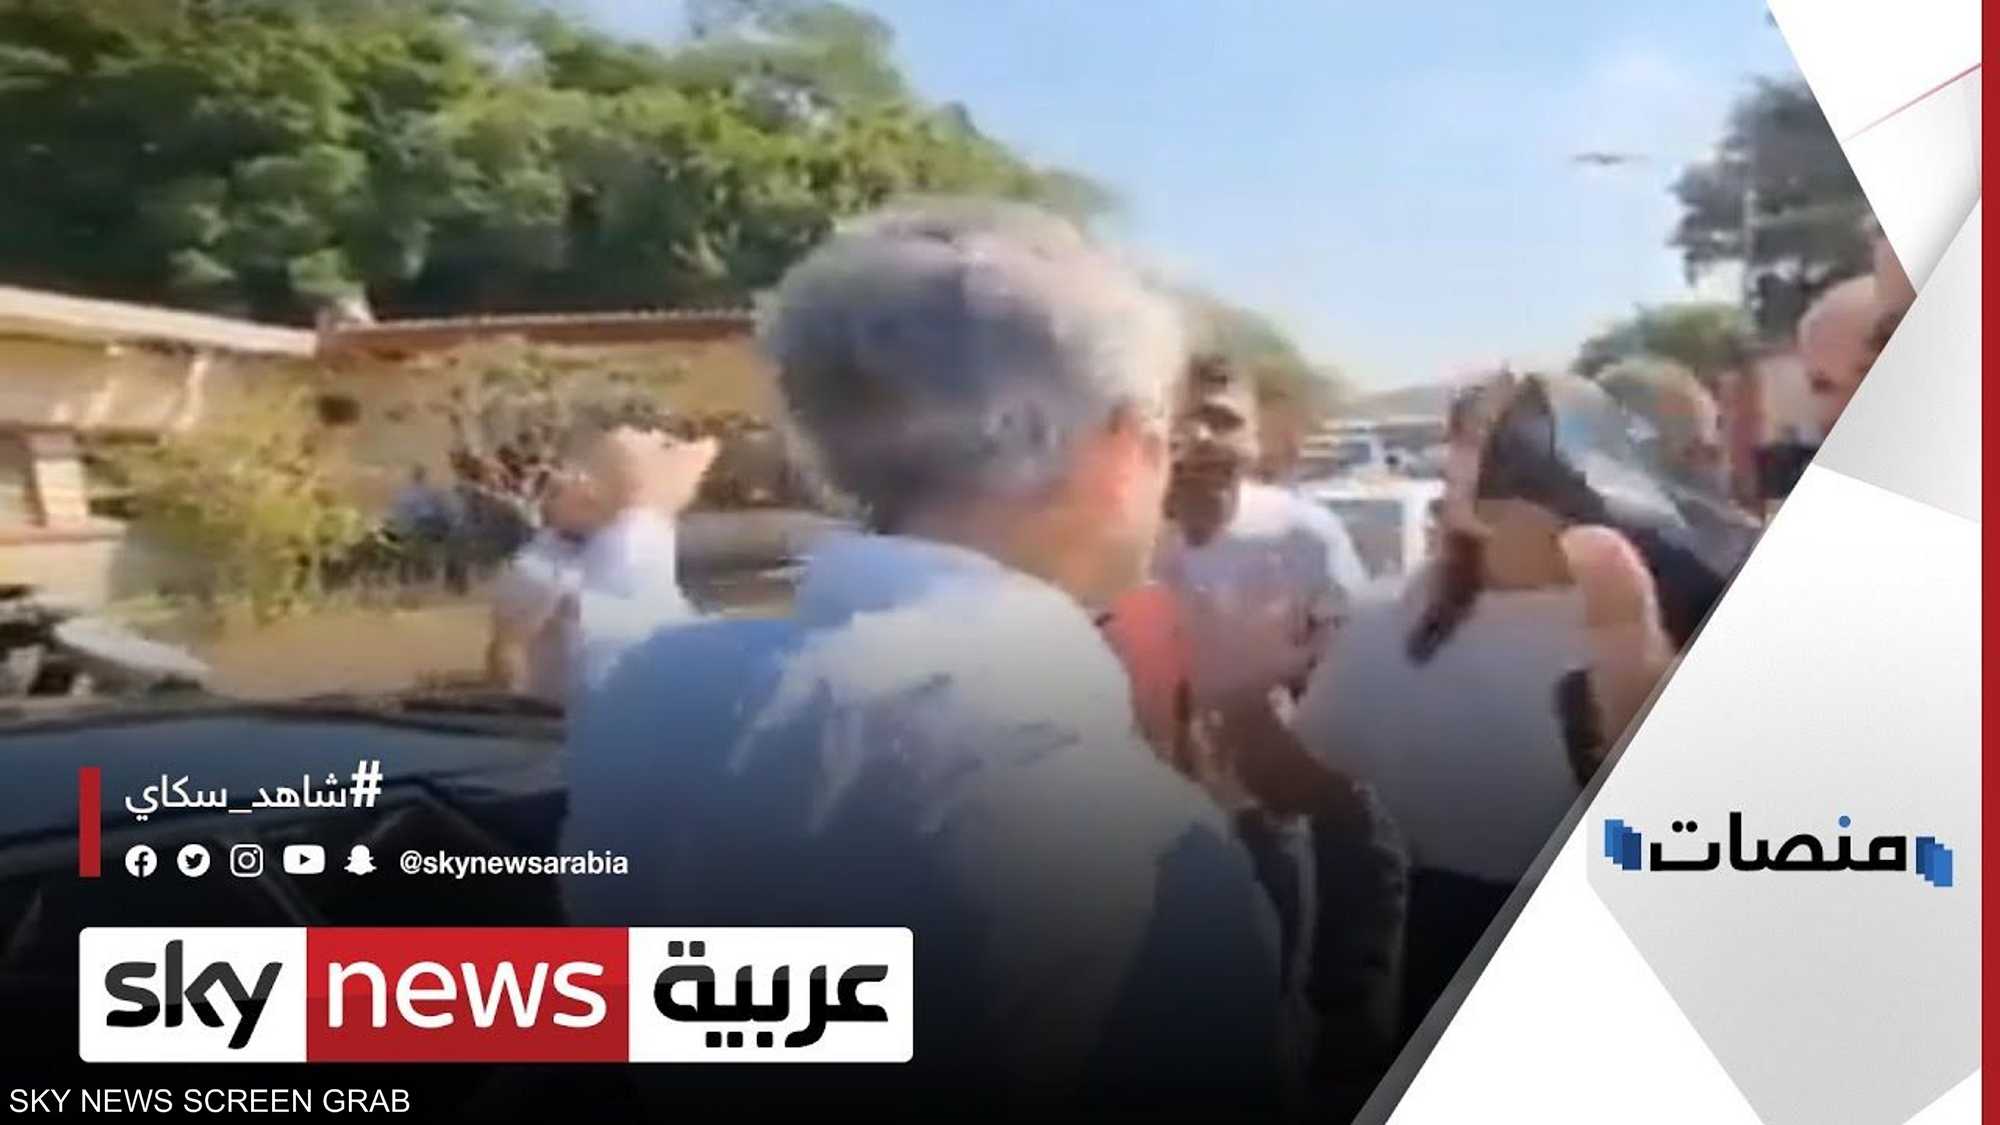 مواطنون يحاصرون وزيرا لبنانيا بالأسئلة في الشارع